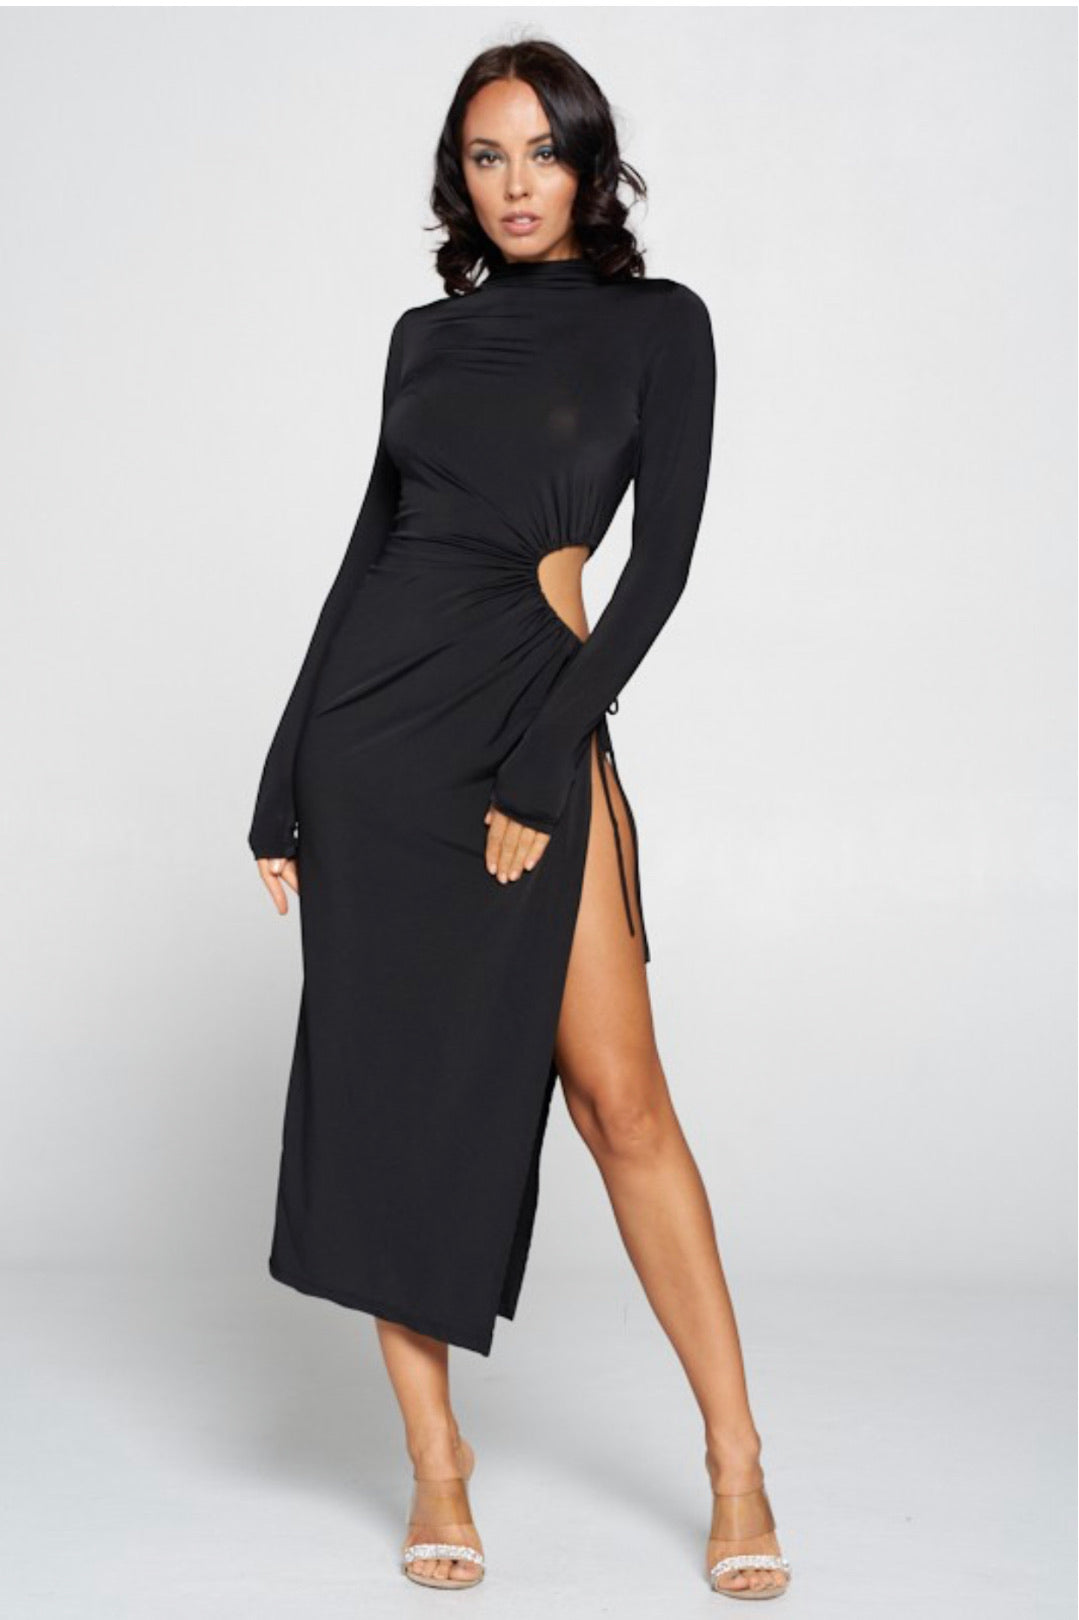 Ebony Dress - Black